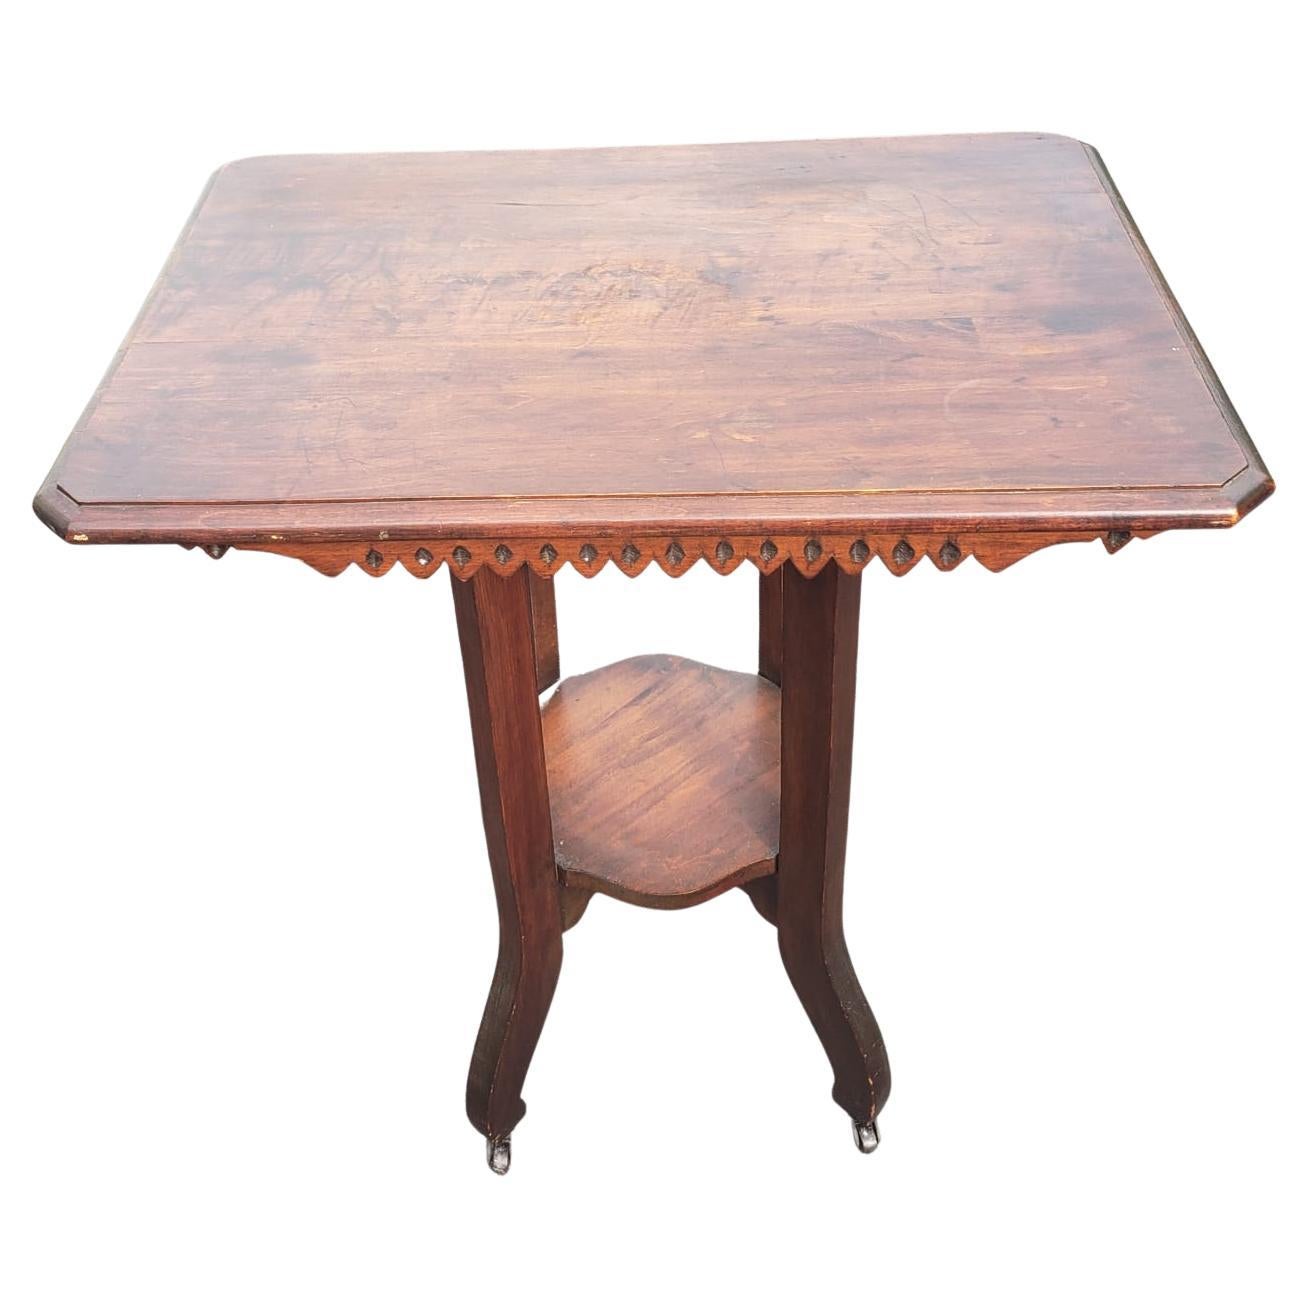 Antike Nussbaum-Etagen-Tisch Beistelltisch auf Rädern, ca. 1910er Jahre.
Guter alter Zustand.
Maße: 28,25